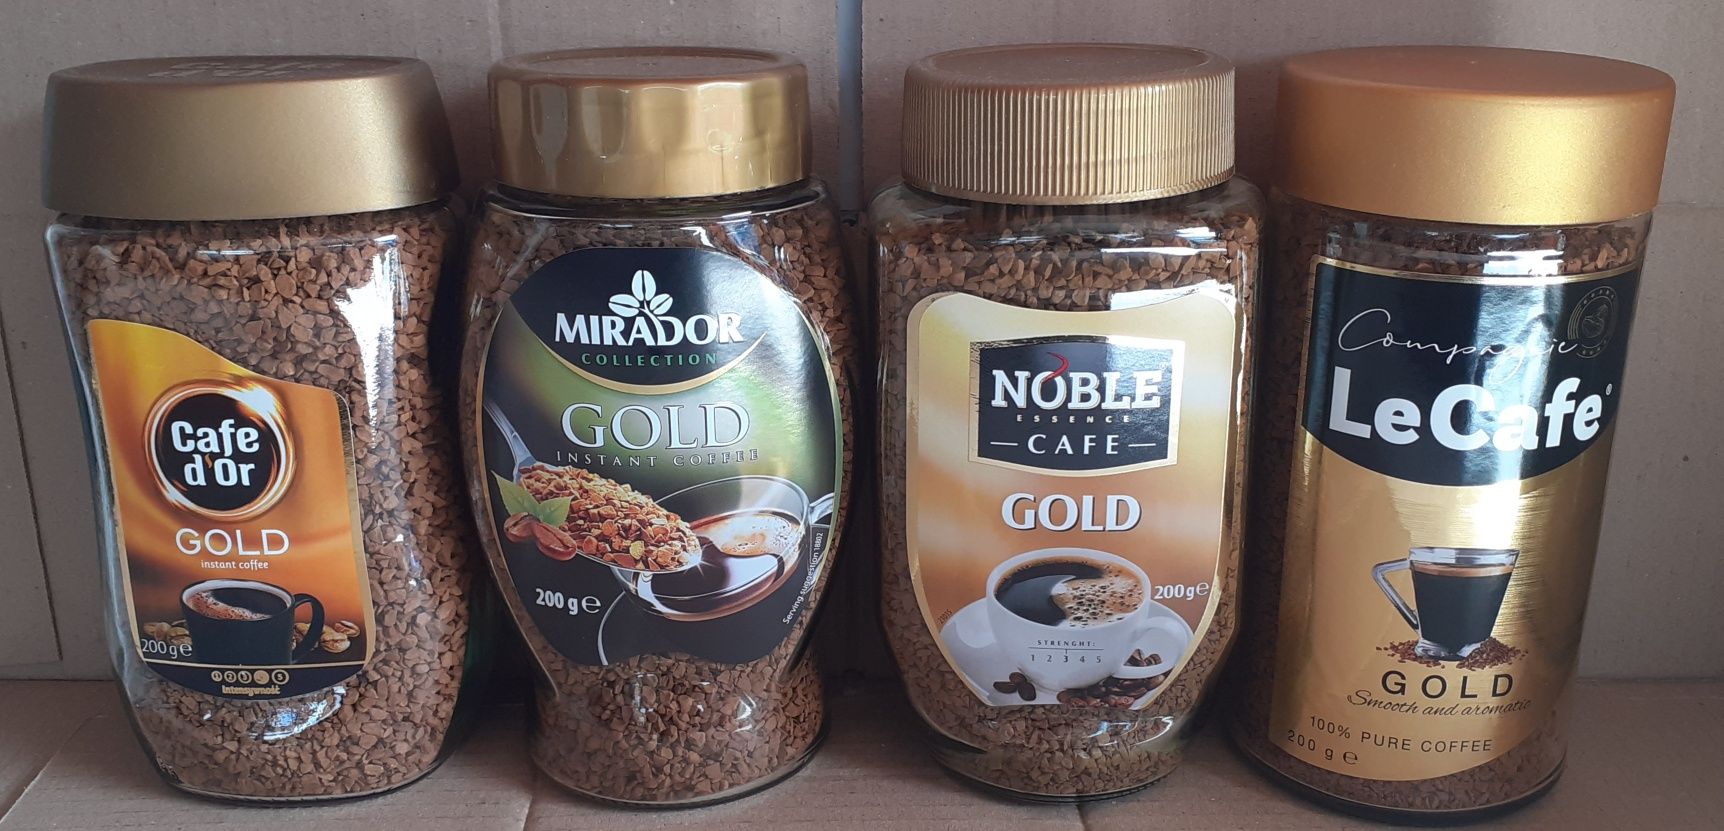 Кофе растворимый Noble Gold,Cofe Dor,Mirador,Le Cafe 200 грм, Польша